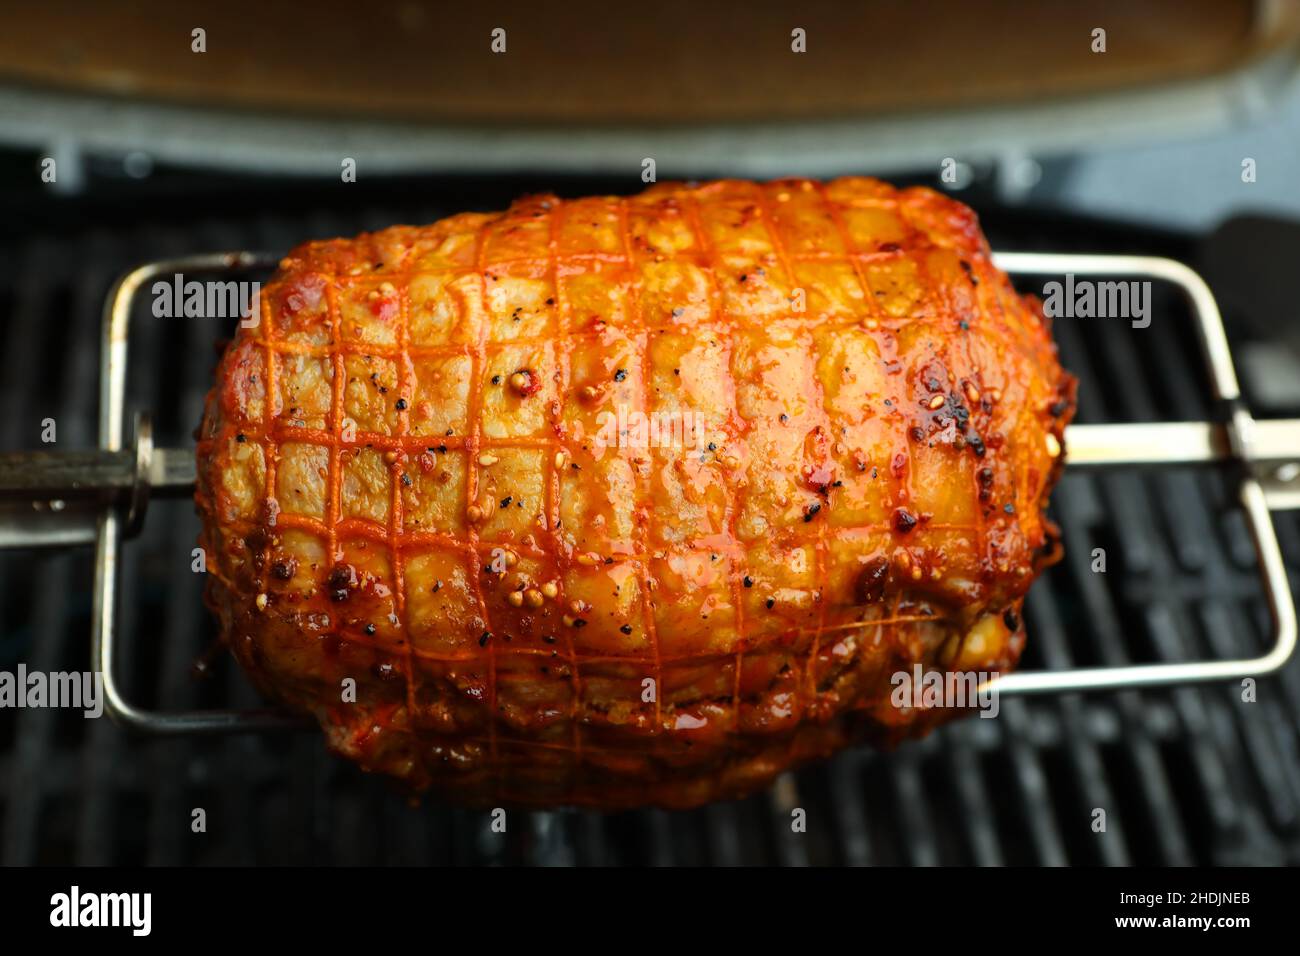 broiling, roast pork, rotary skewer, roast porks, rotary skewers Stock Photo